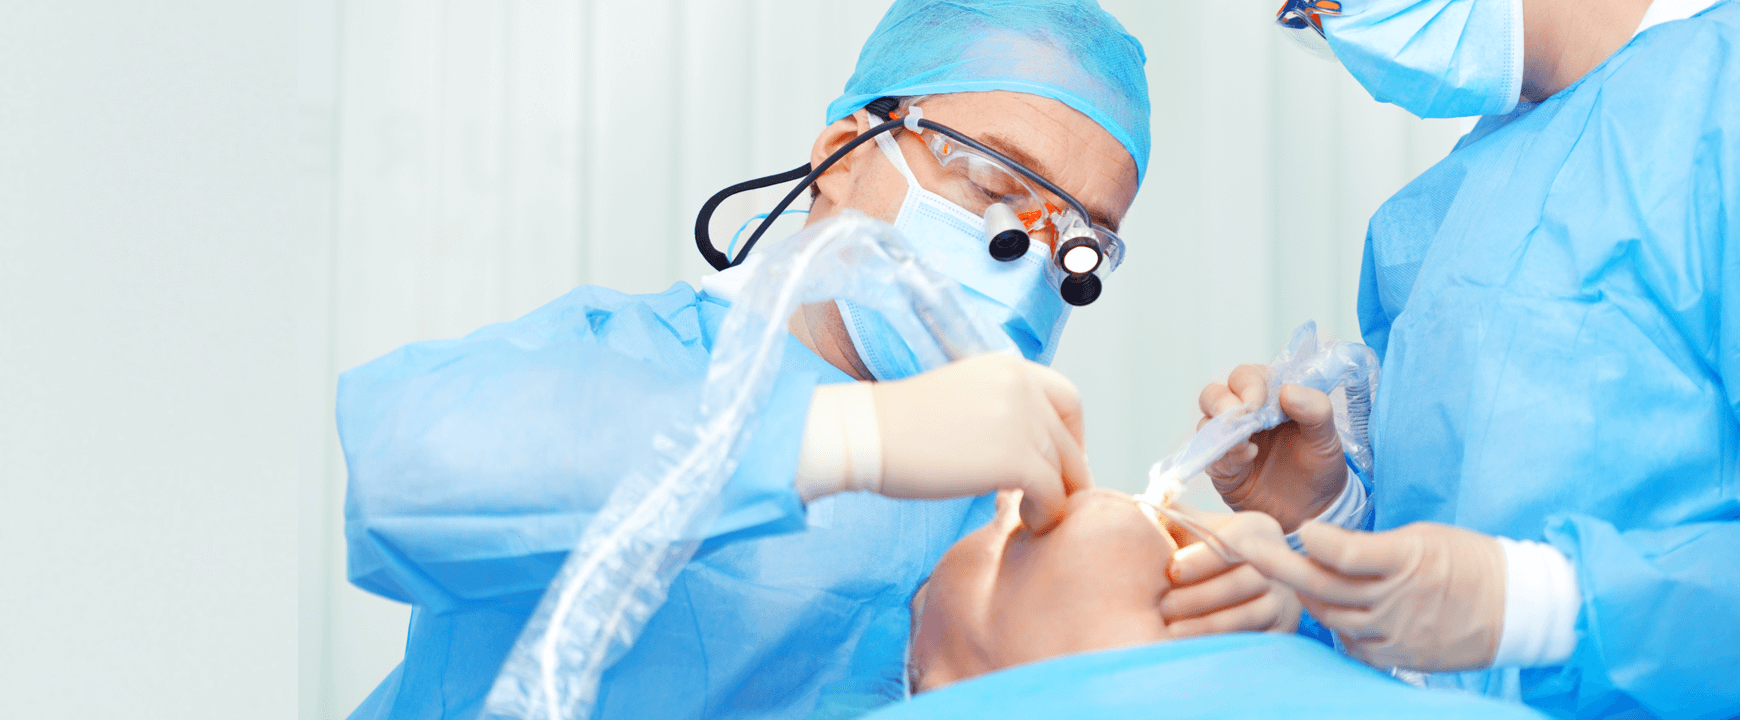 Стоматолог хирург-имплантолог